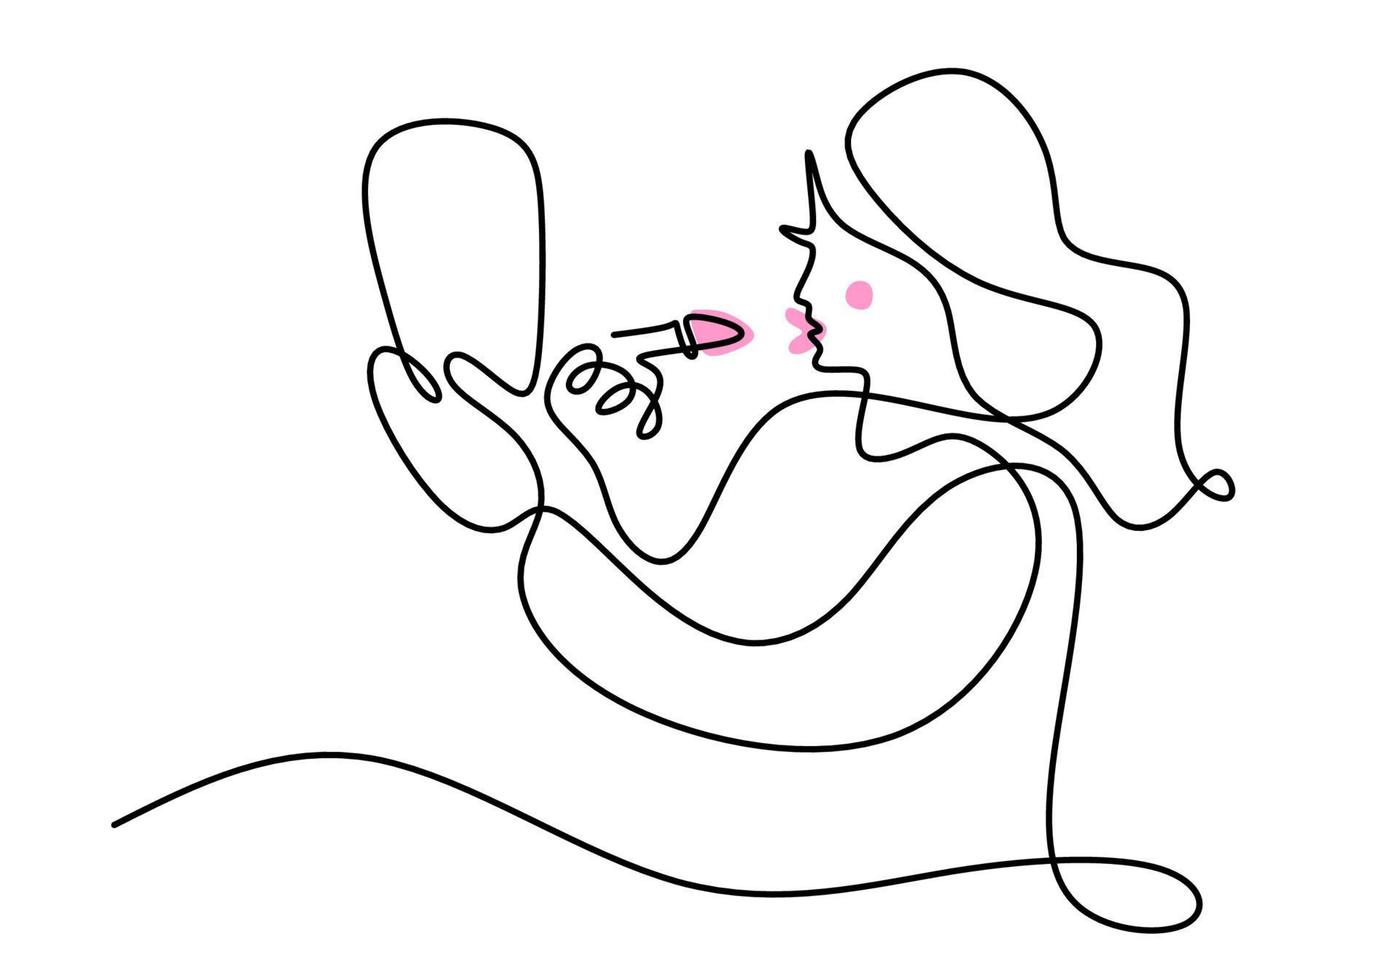 desenho de linha única contínua do rosto de uma mulher feliz, usando batom rosa com um grande espelho de vista lateral. mulher compõem o tema uma linha isolada no fundo branco. vetor